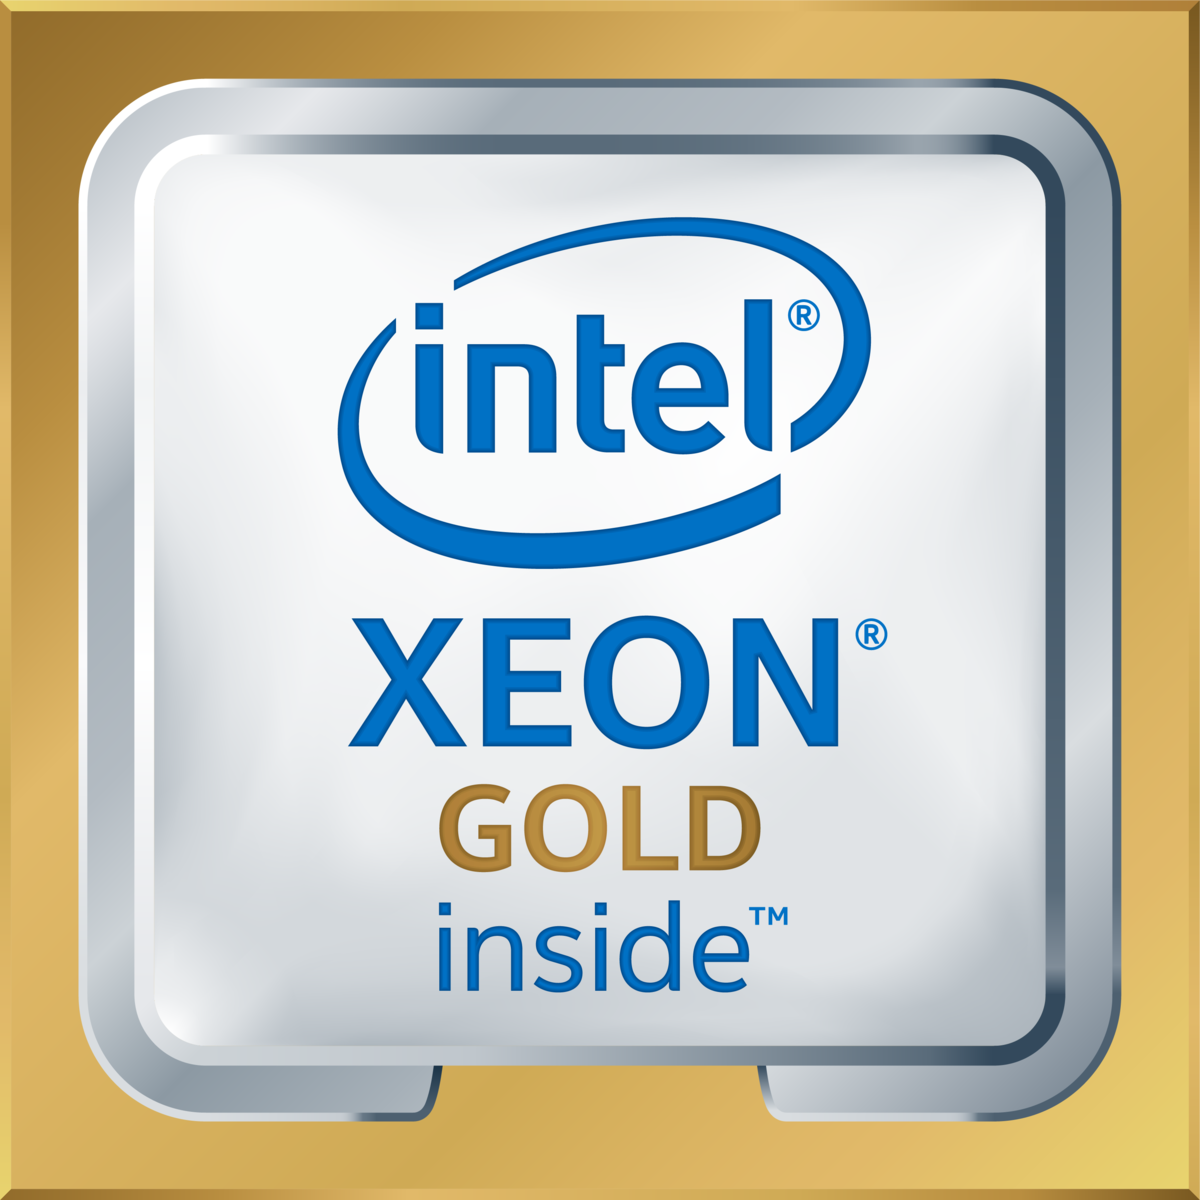 Intel(R) Xeon(R) Gold 5218 CPU @ 2.30GHz's logo